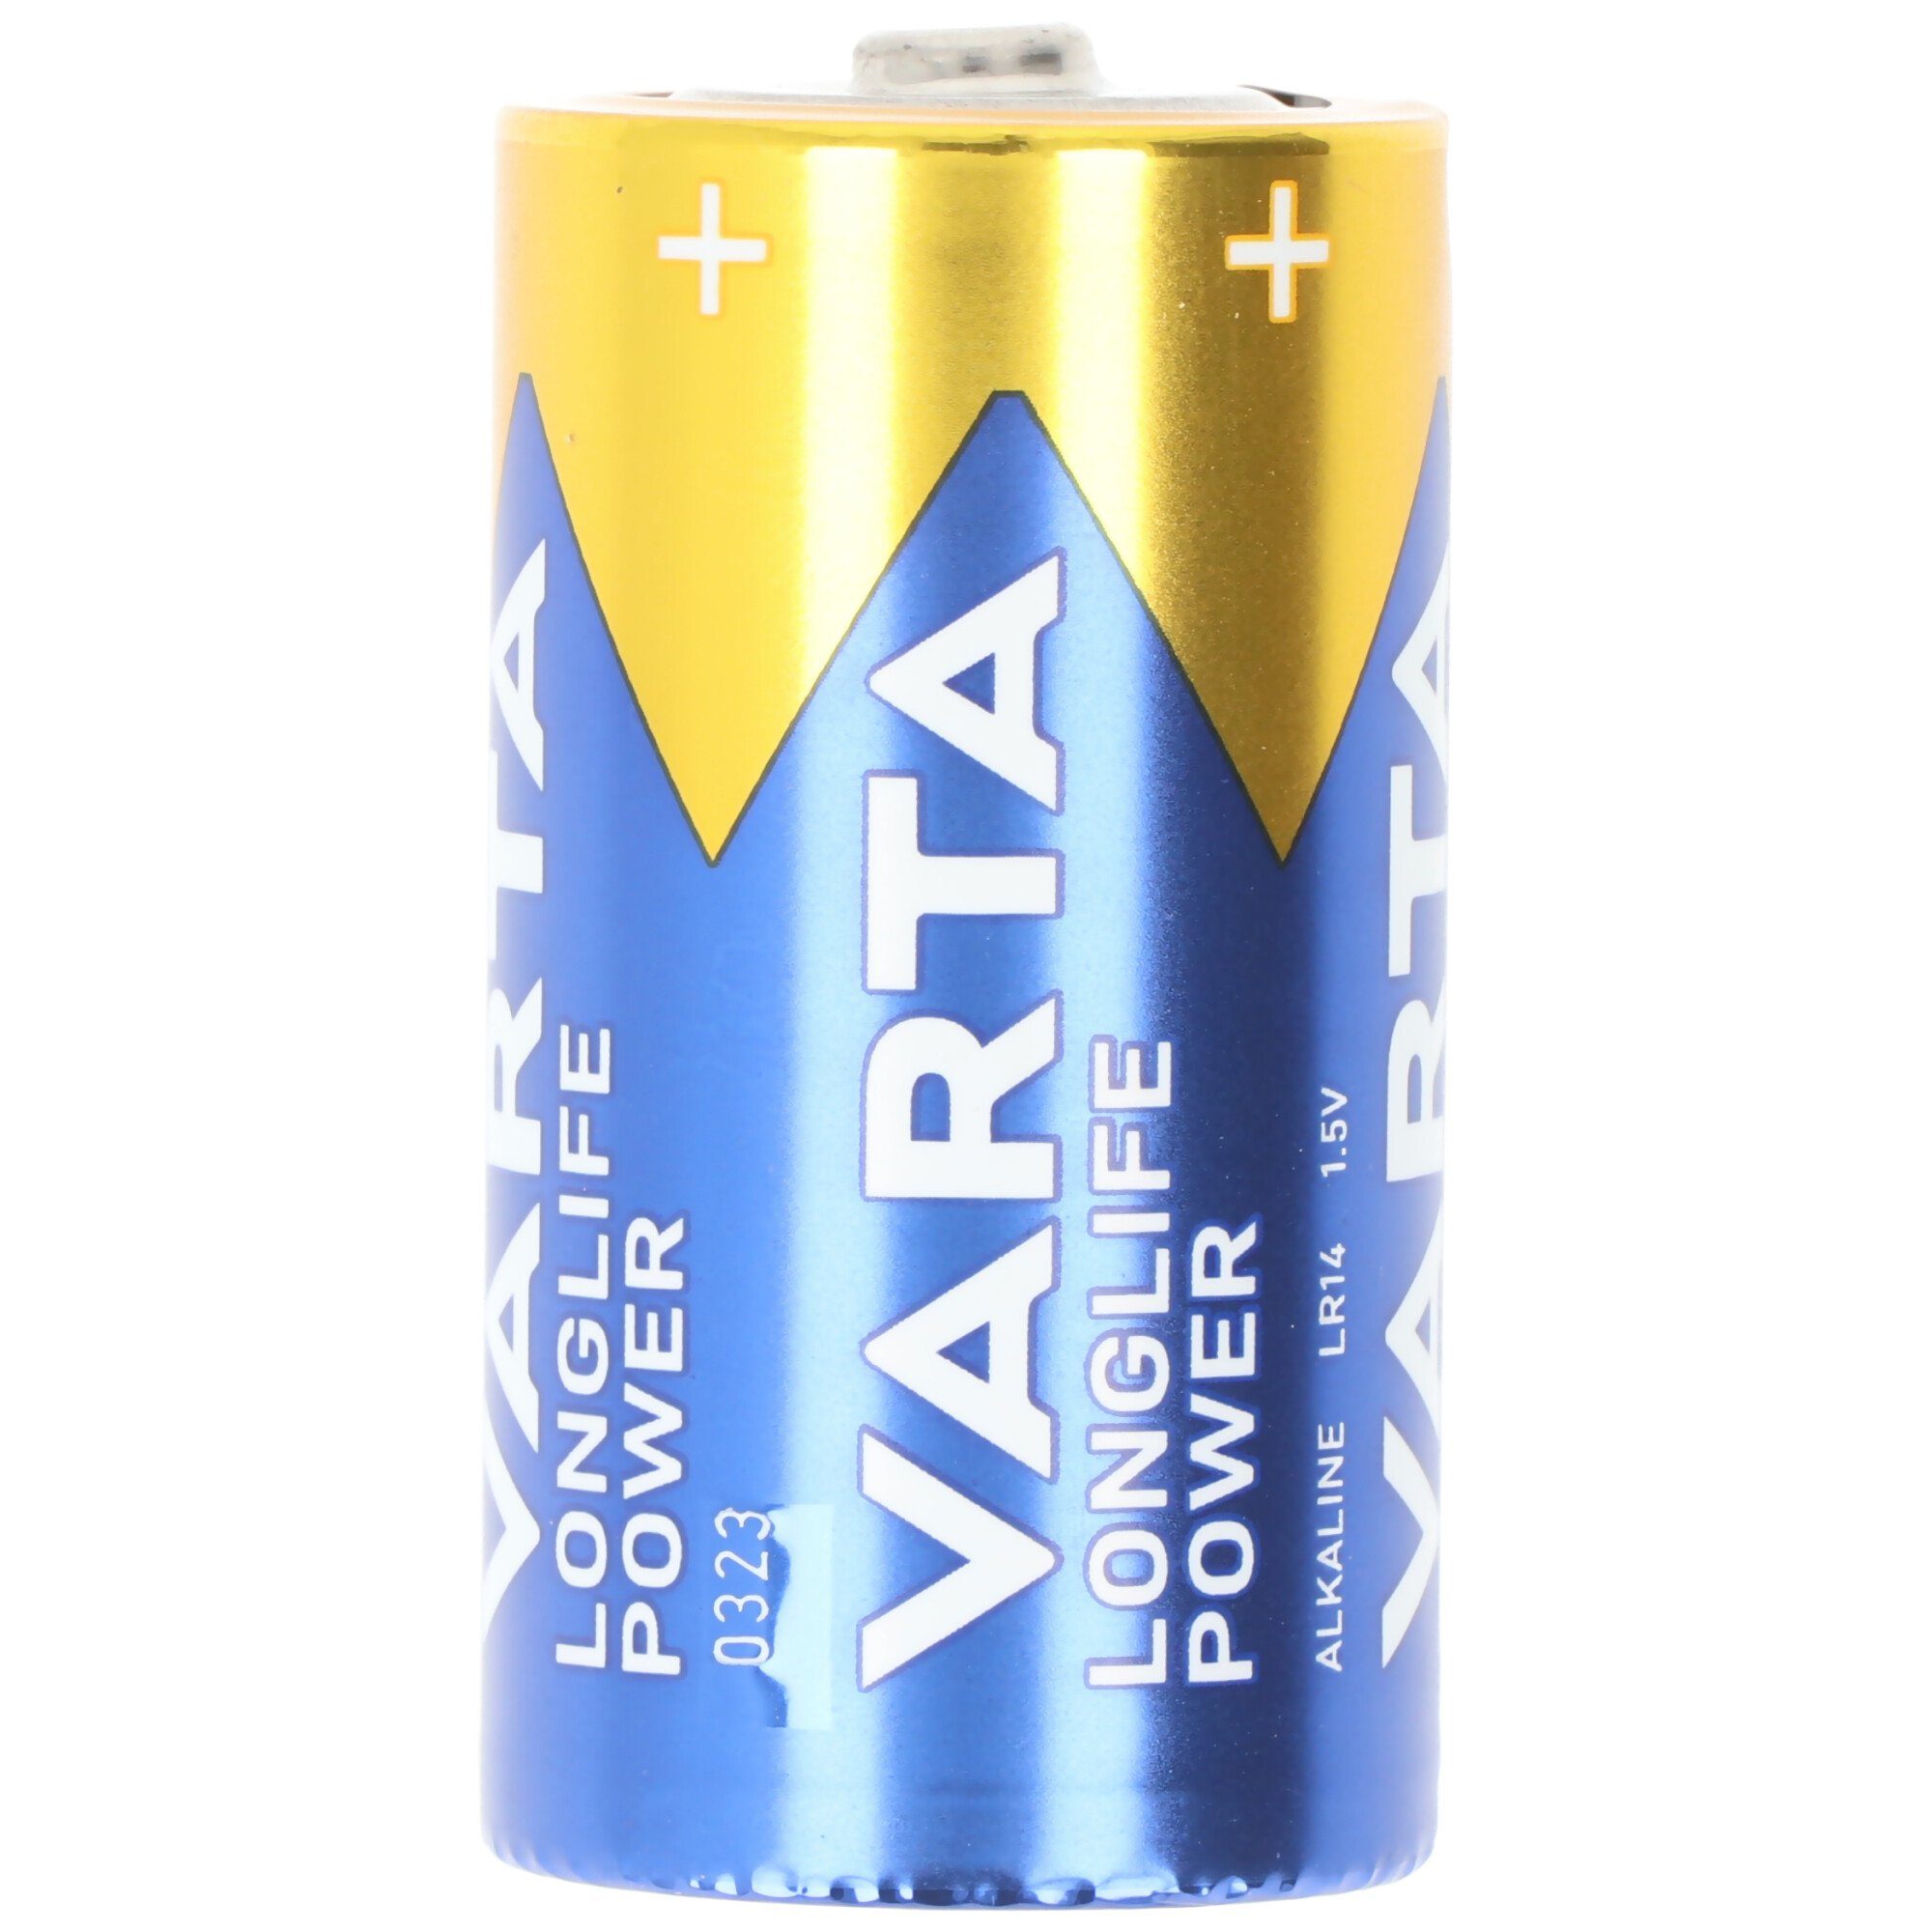 VARTA Varta Longlife Power (ehem. High Energy) Alkaline Batterie Baby, LR14 Batterie, (1,5 V)